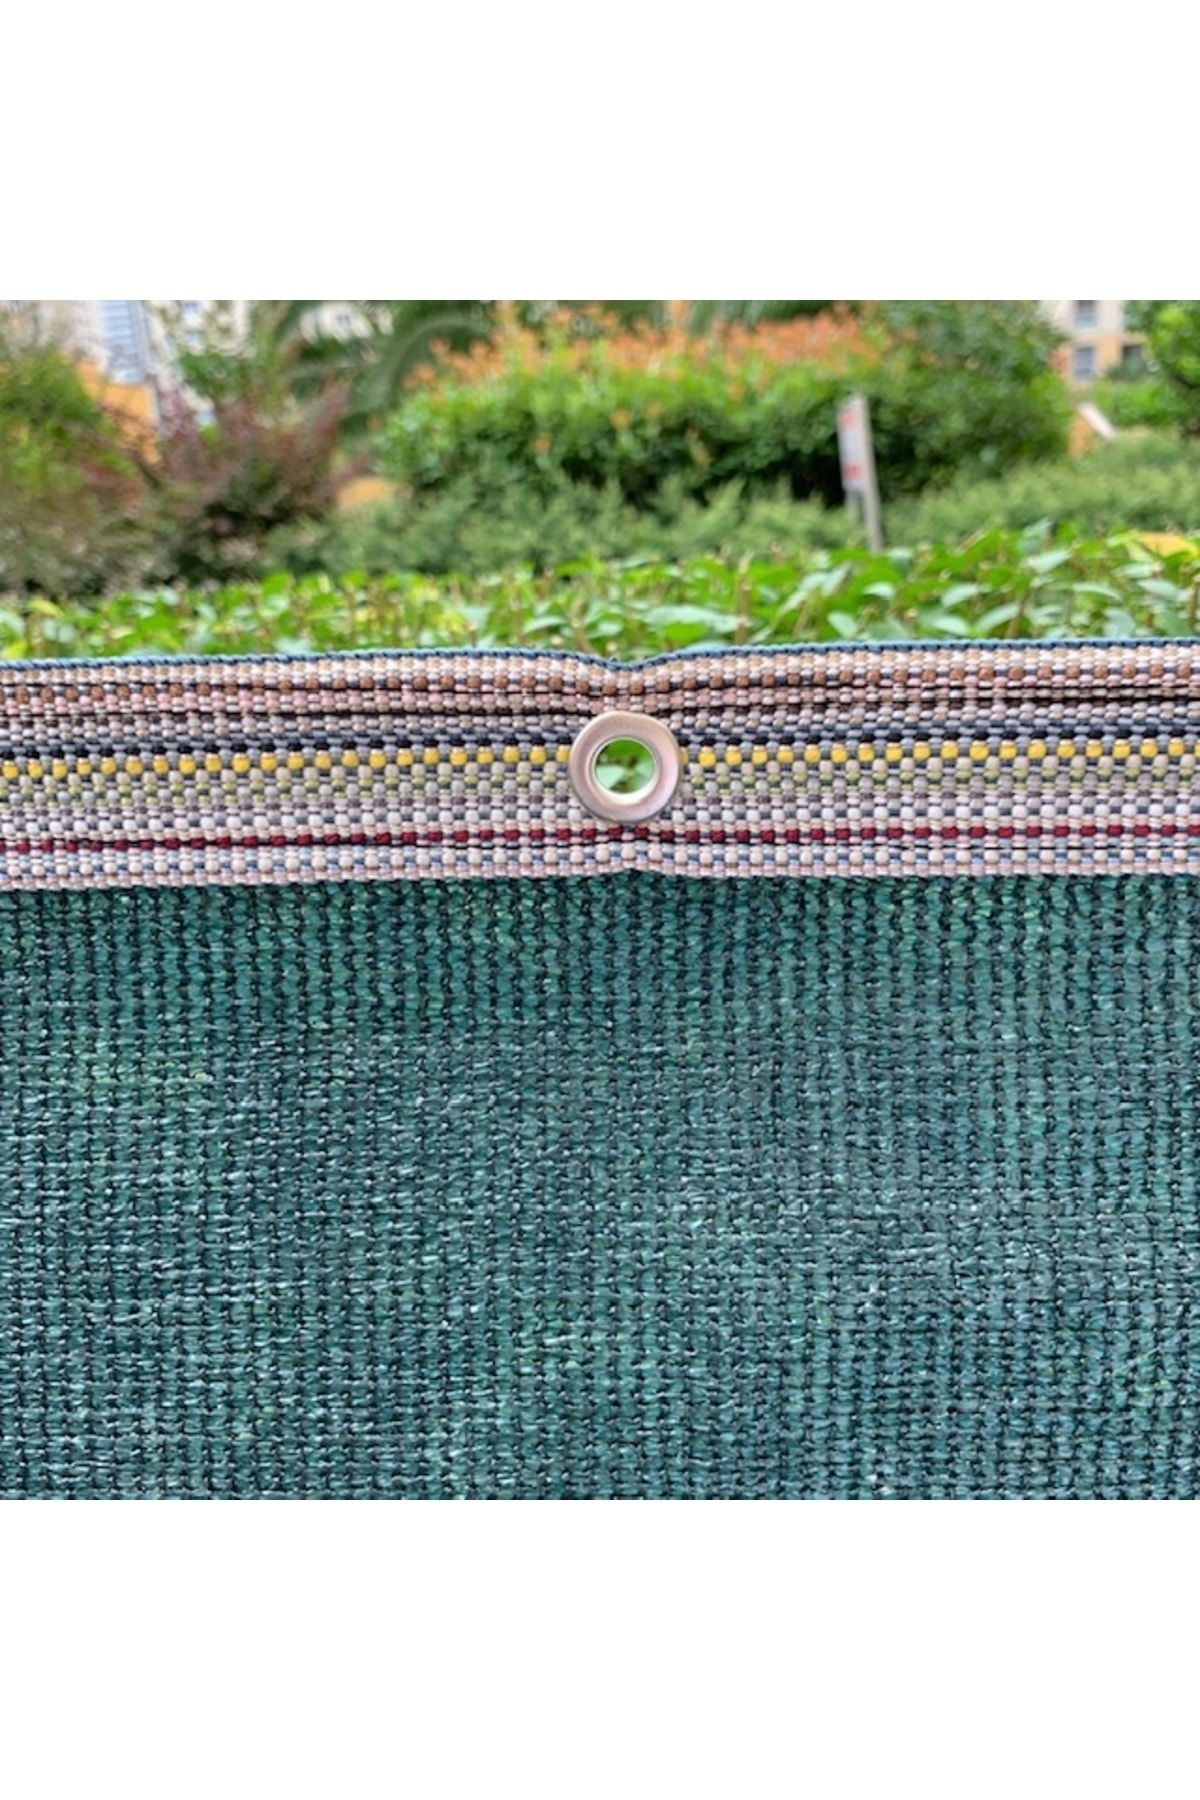 Filexus %95'lik 1.5m X 20m Gölgelik-bahçe Çit Filesi-şeritli Halkalı - Koyu Yeşil